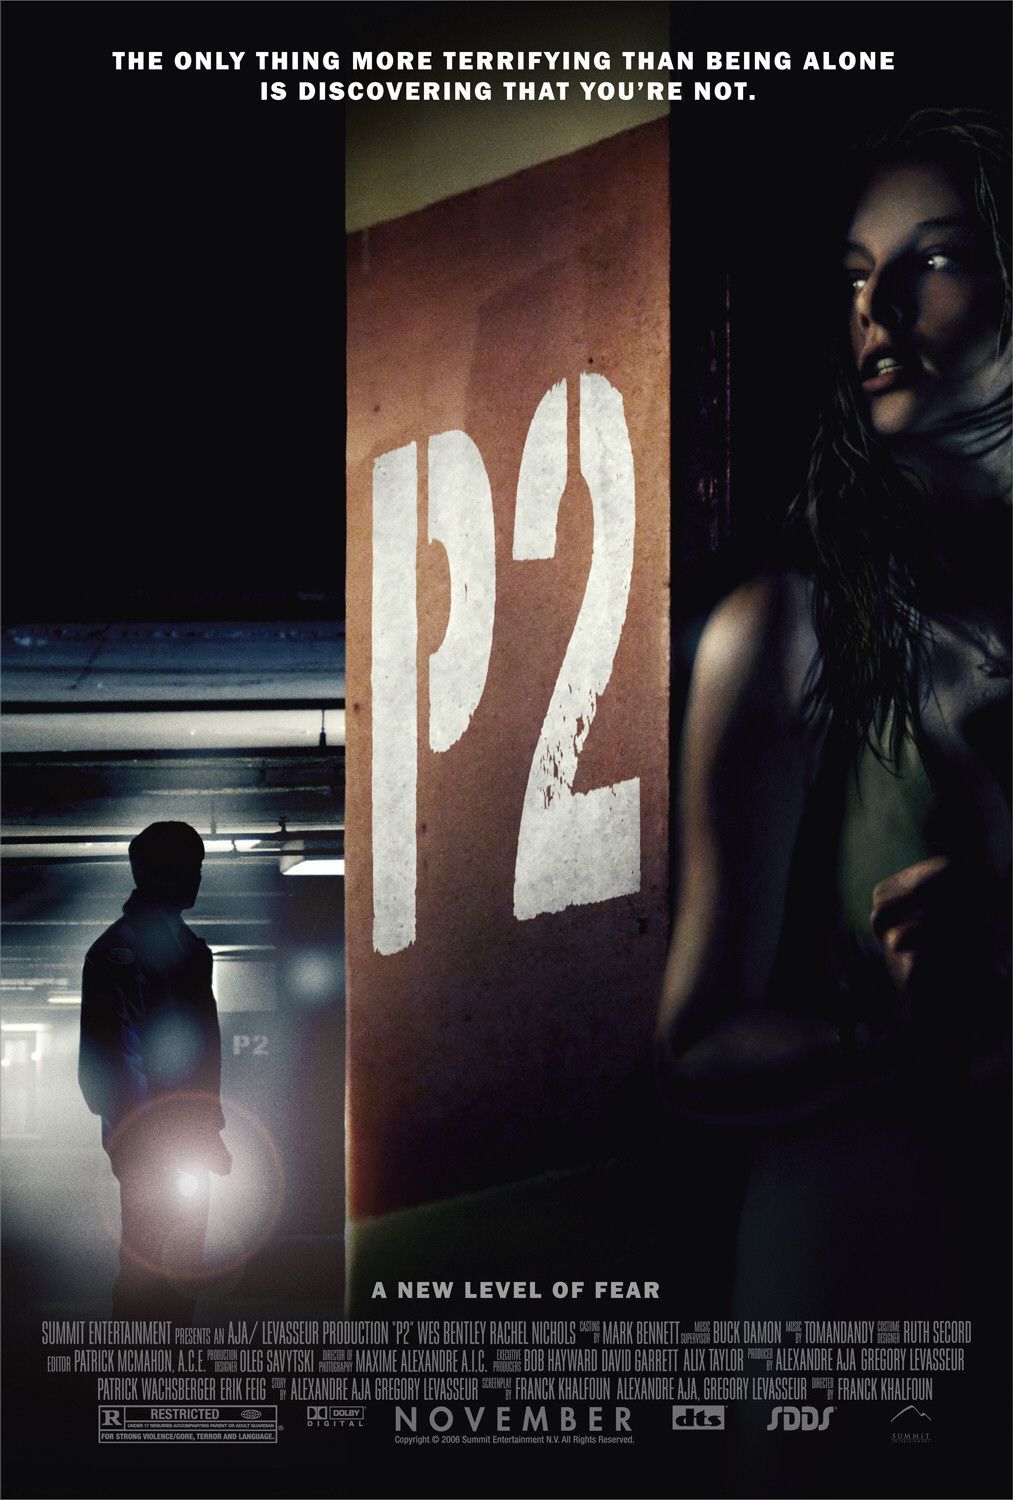 영화 P2(2007) 폐쇄된 지하주차장에서 벌어지는 크리스마스 악몽